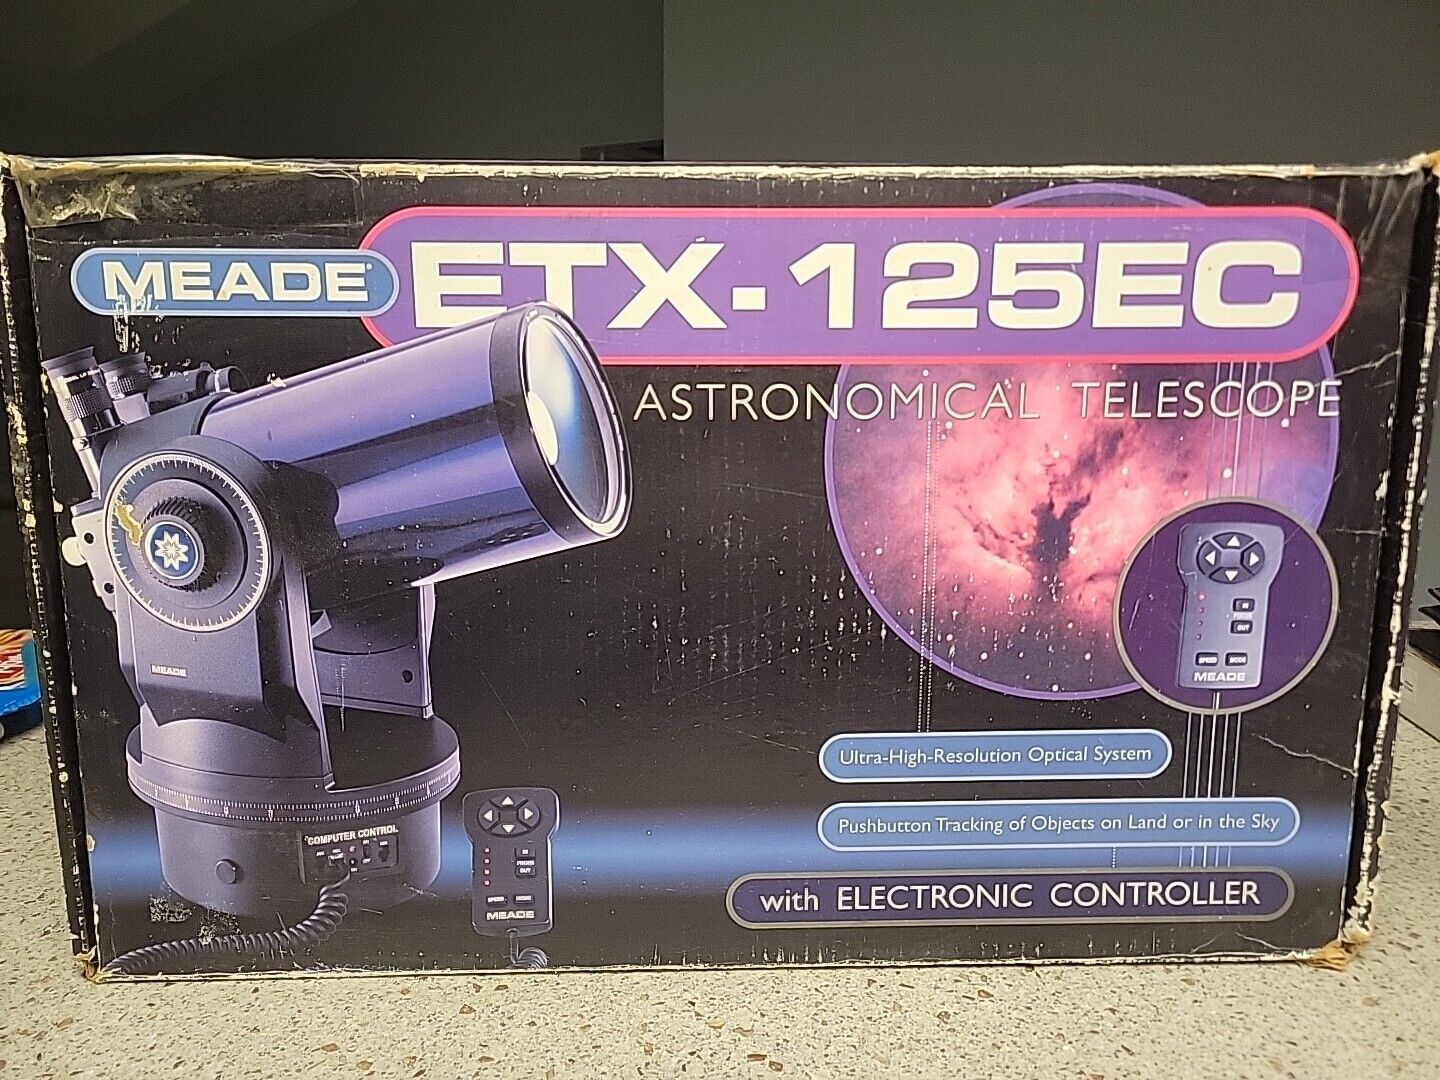 Meade ETX-125EC Astronomical Reflector Telescope - Open/Original Box with extras